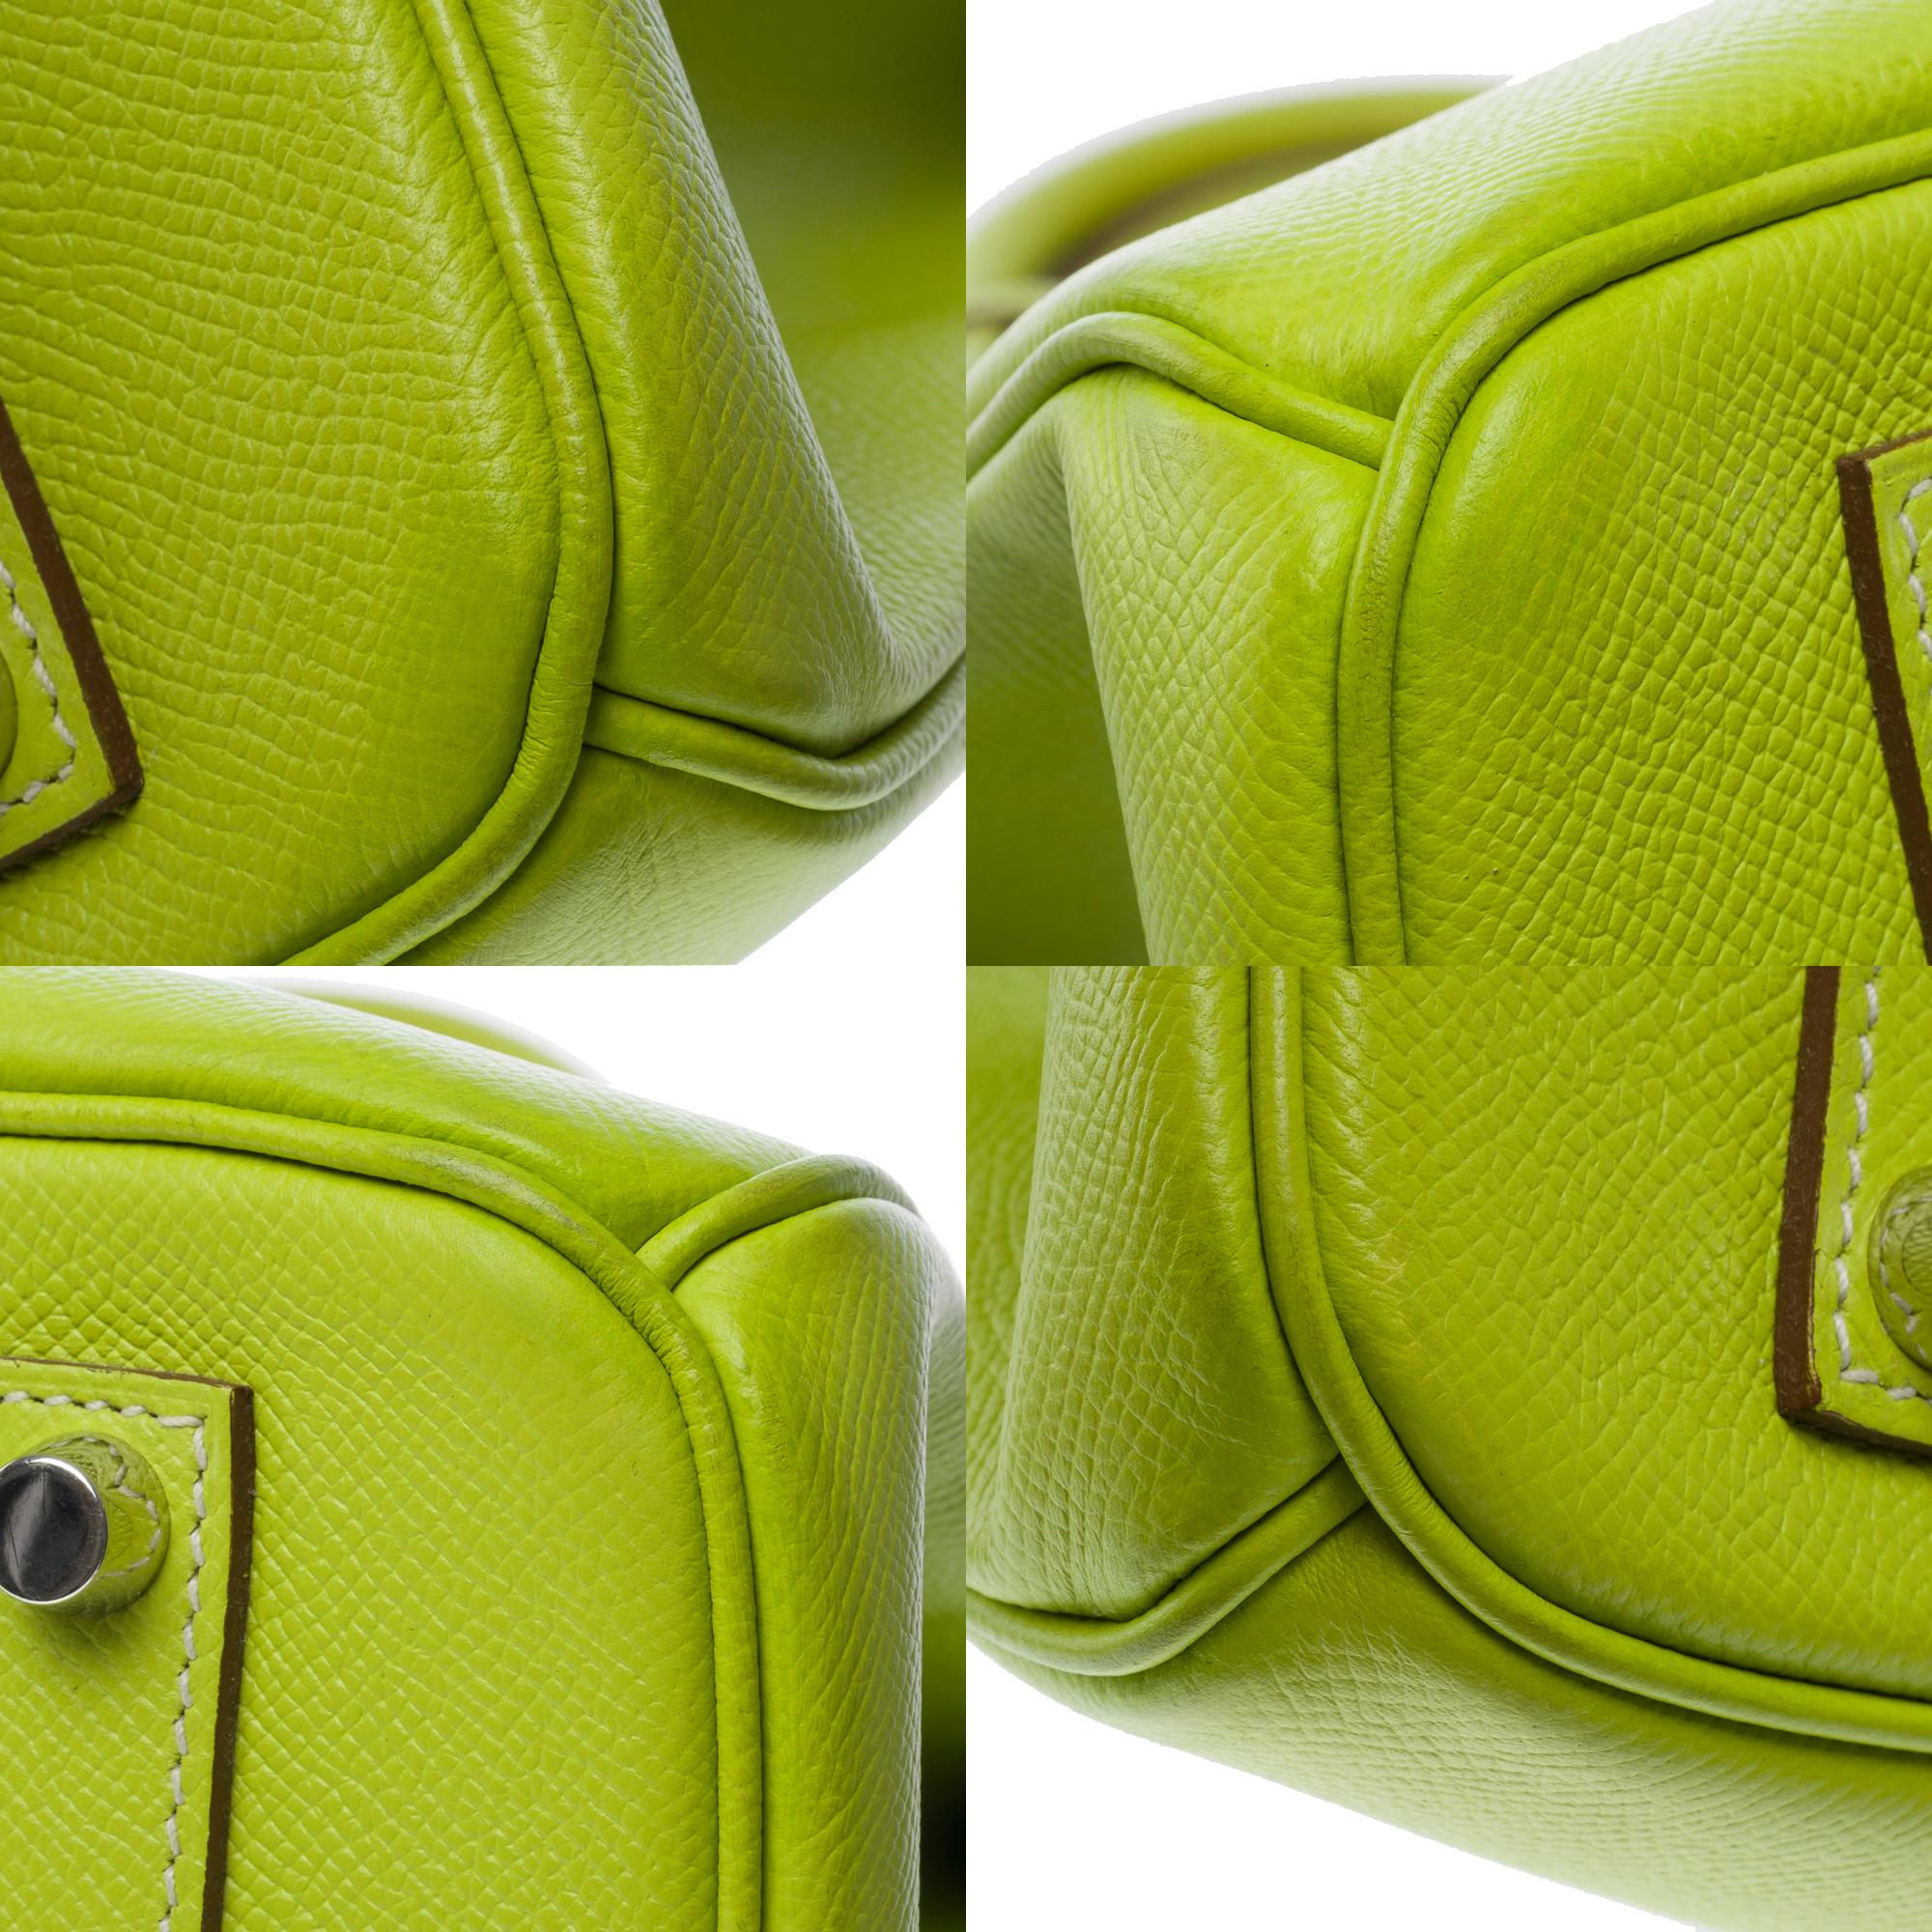 Candy limited edition Hermès Birkin 35 handbag in Kiwi Green epsom leather, SHW 7